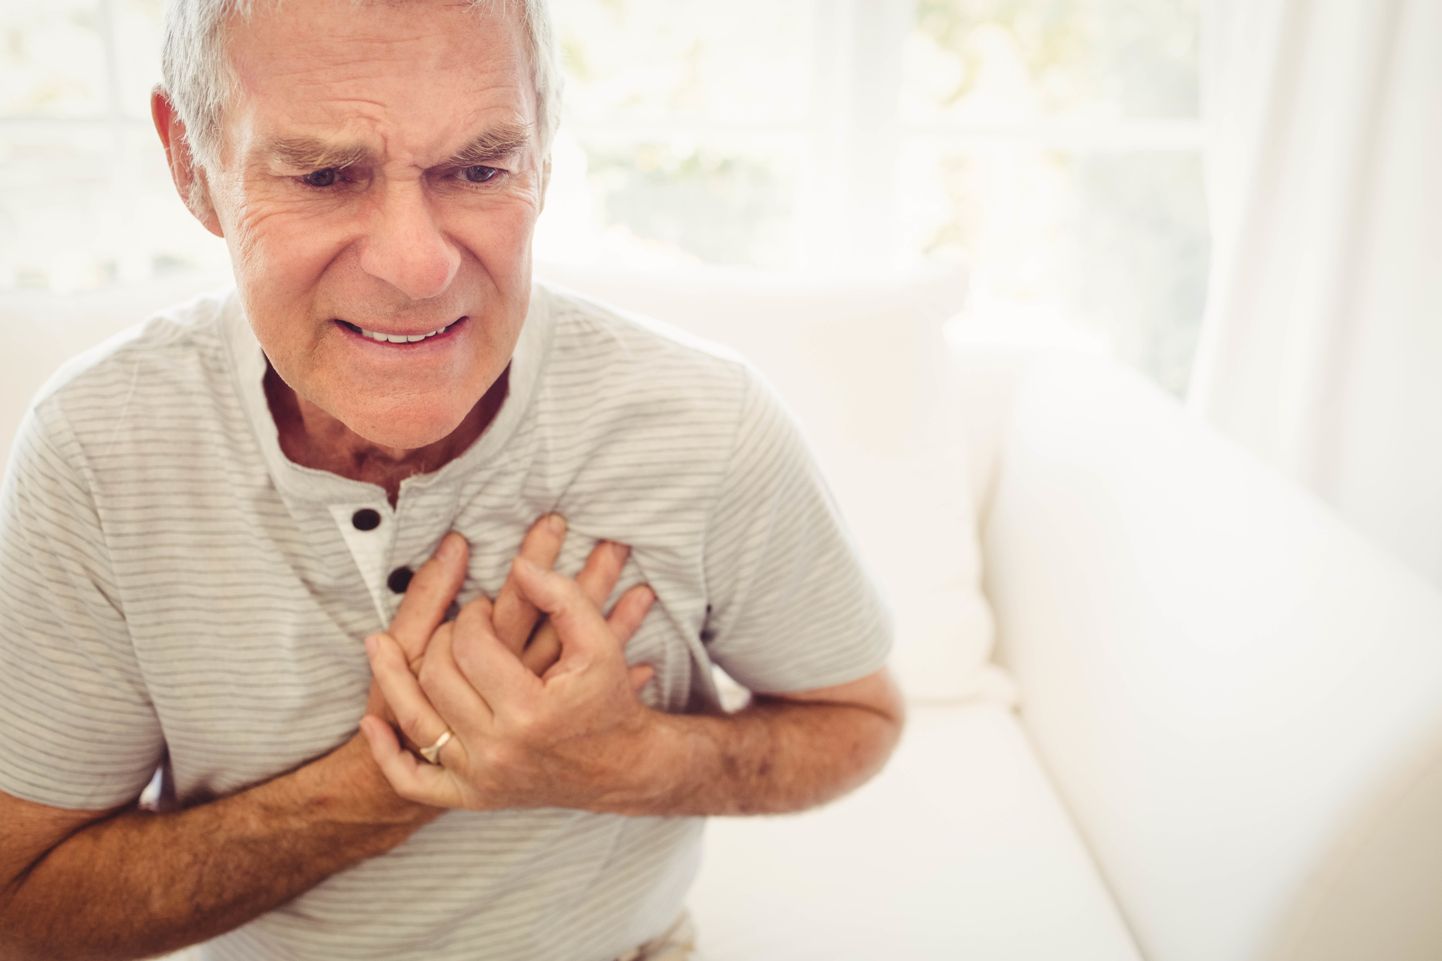 Keskeas on meeste risk infarkti haigestuda mitu korda kõrgem kui naistel, risk ühtlustub sugude vahel 70. eluaastates.